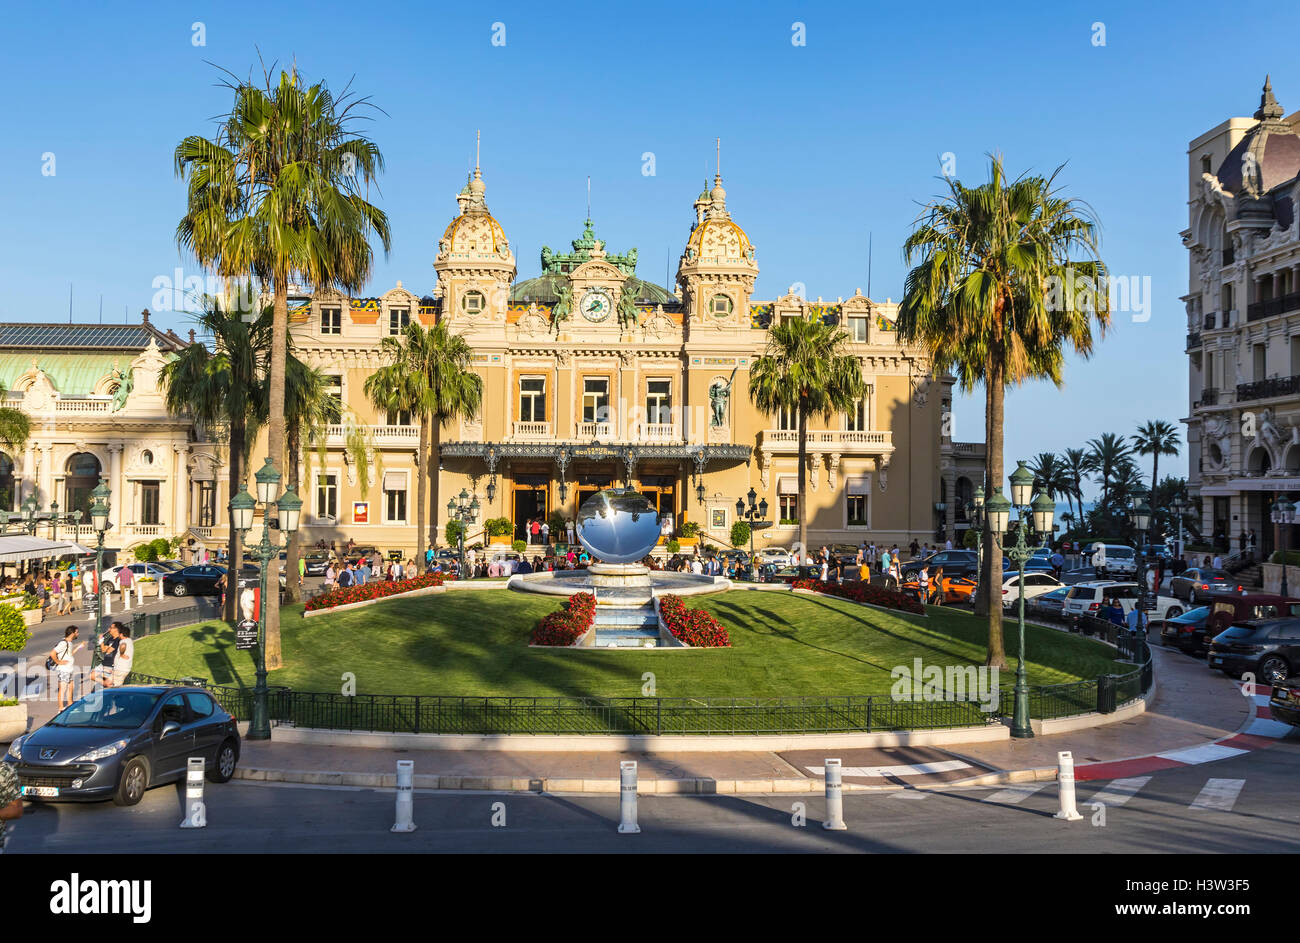 Menschen sammeln vor der Welt berühmte Casino von Monte Carlo, Fürstentum Monaco Stockfoto